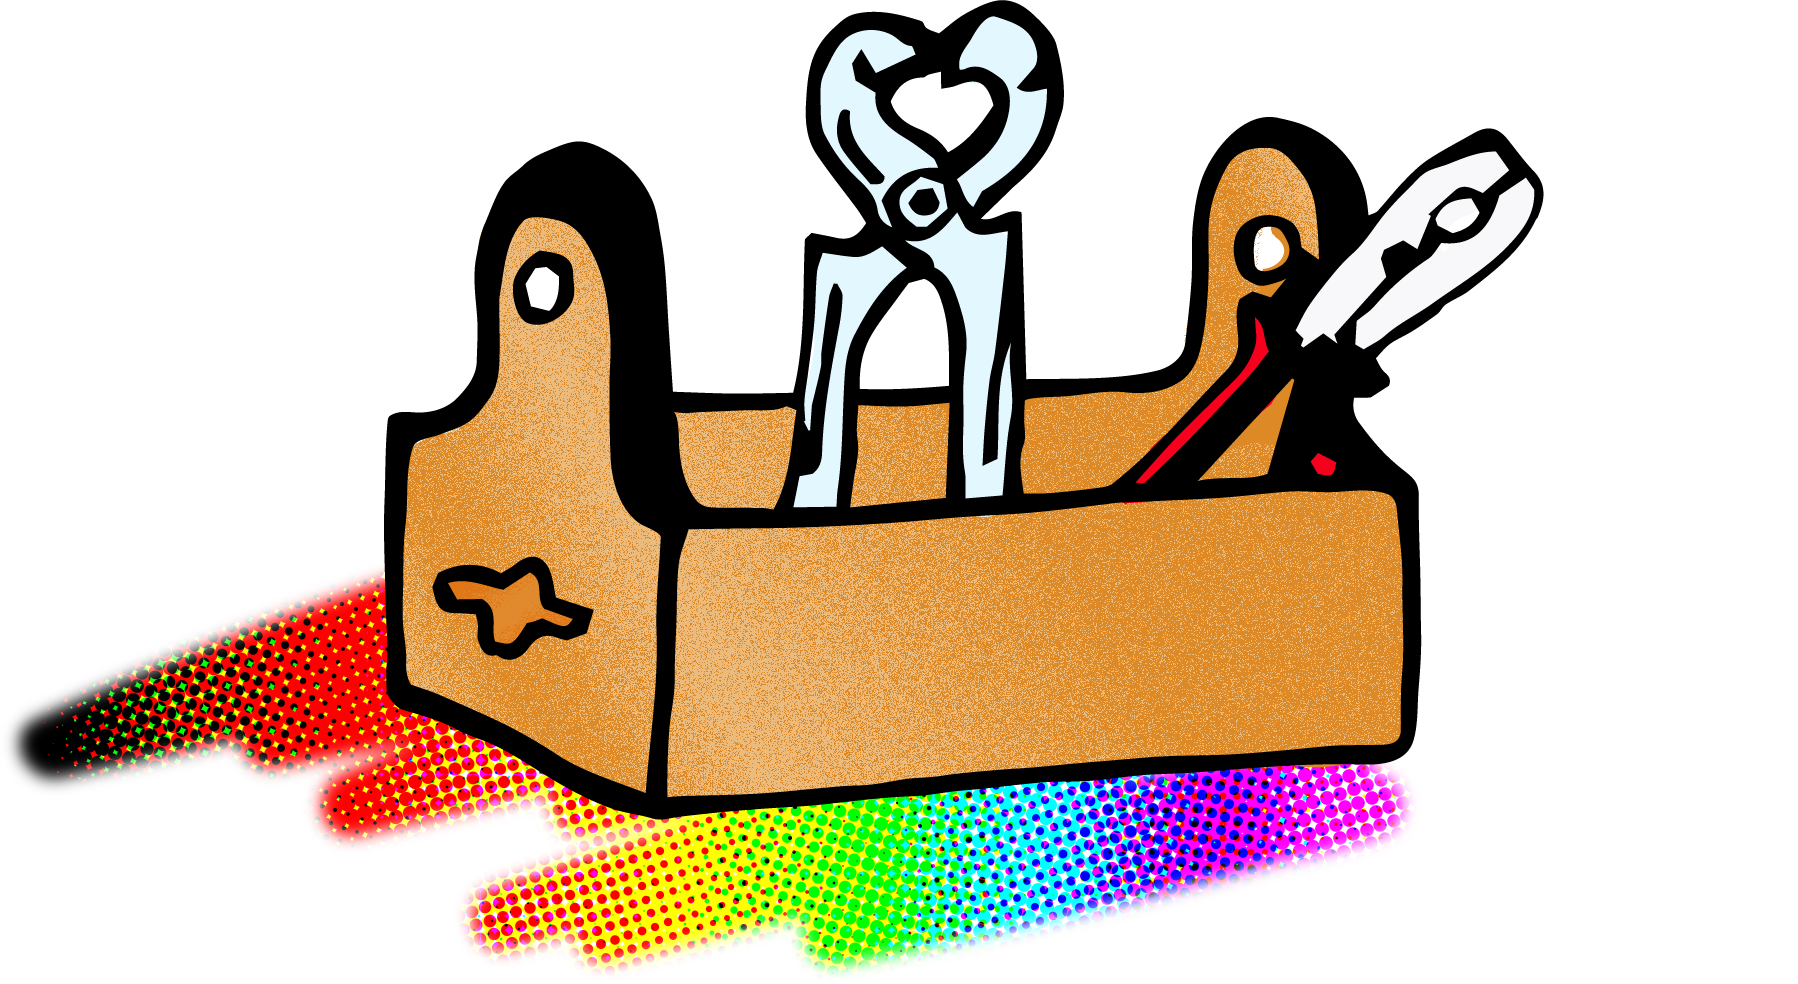 Eine Ilustration mit einer Werkzeugkiste. In der Kiste sind zwei Zangen. Aus der Kiste verlaufen nach unten Regenbogenfarben.